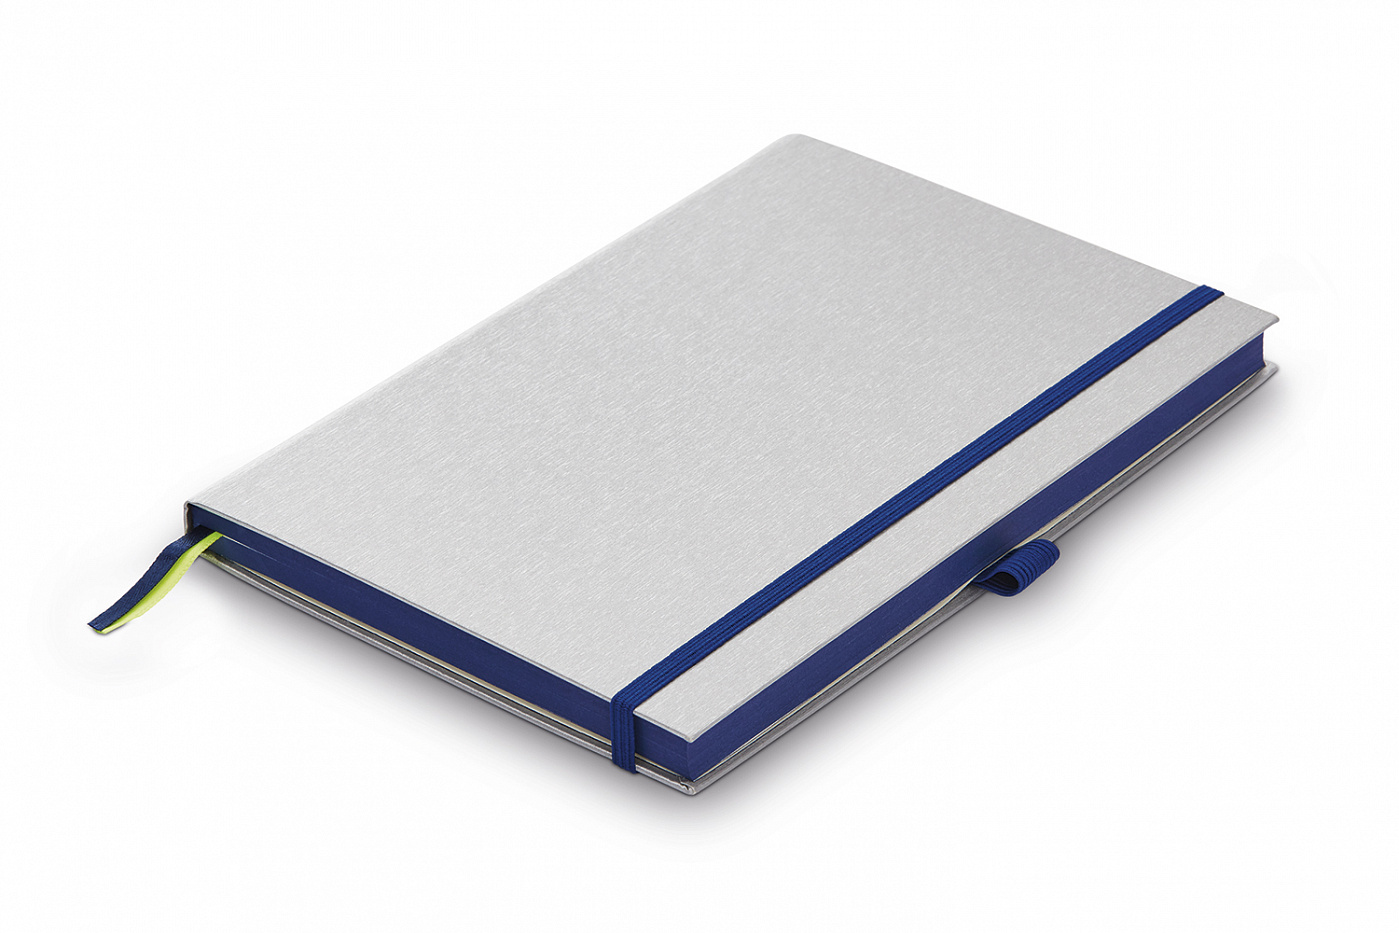 Записная книжка LAMY А6 192 стр, жесткая обложка серебристого цвета, обрез синий книжки на пене синий трактор лево право